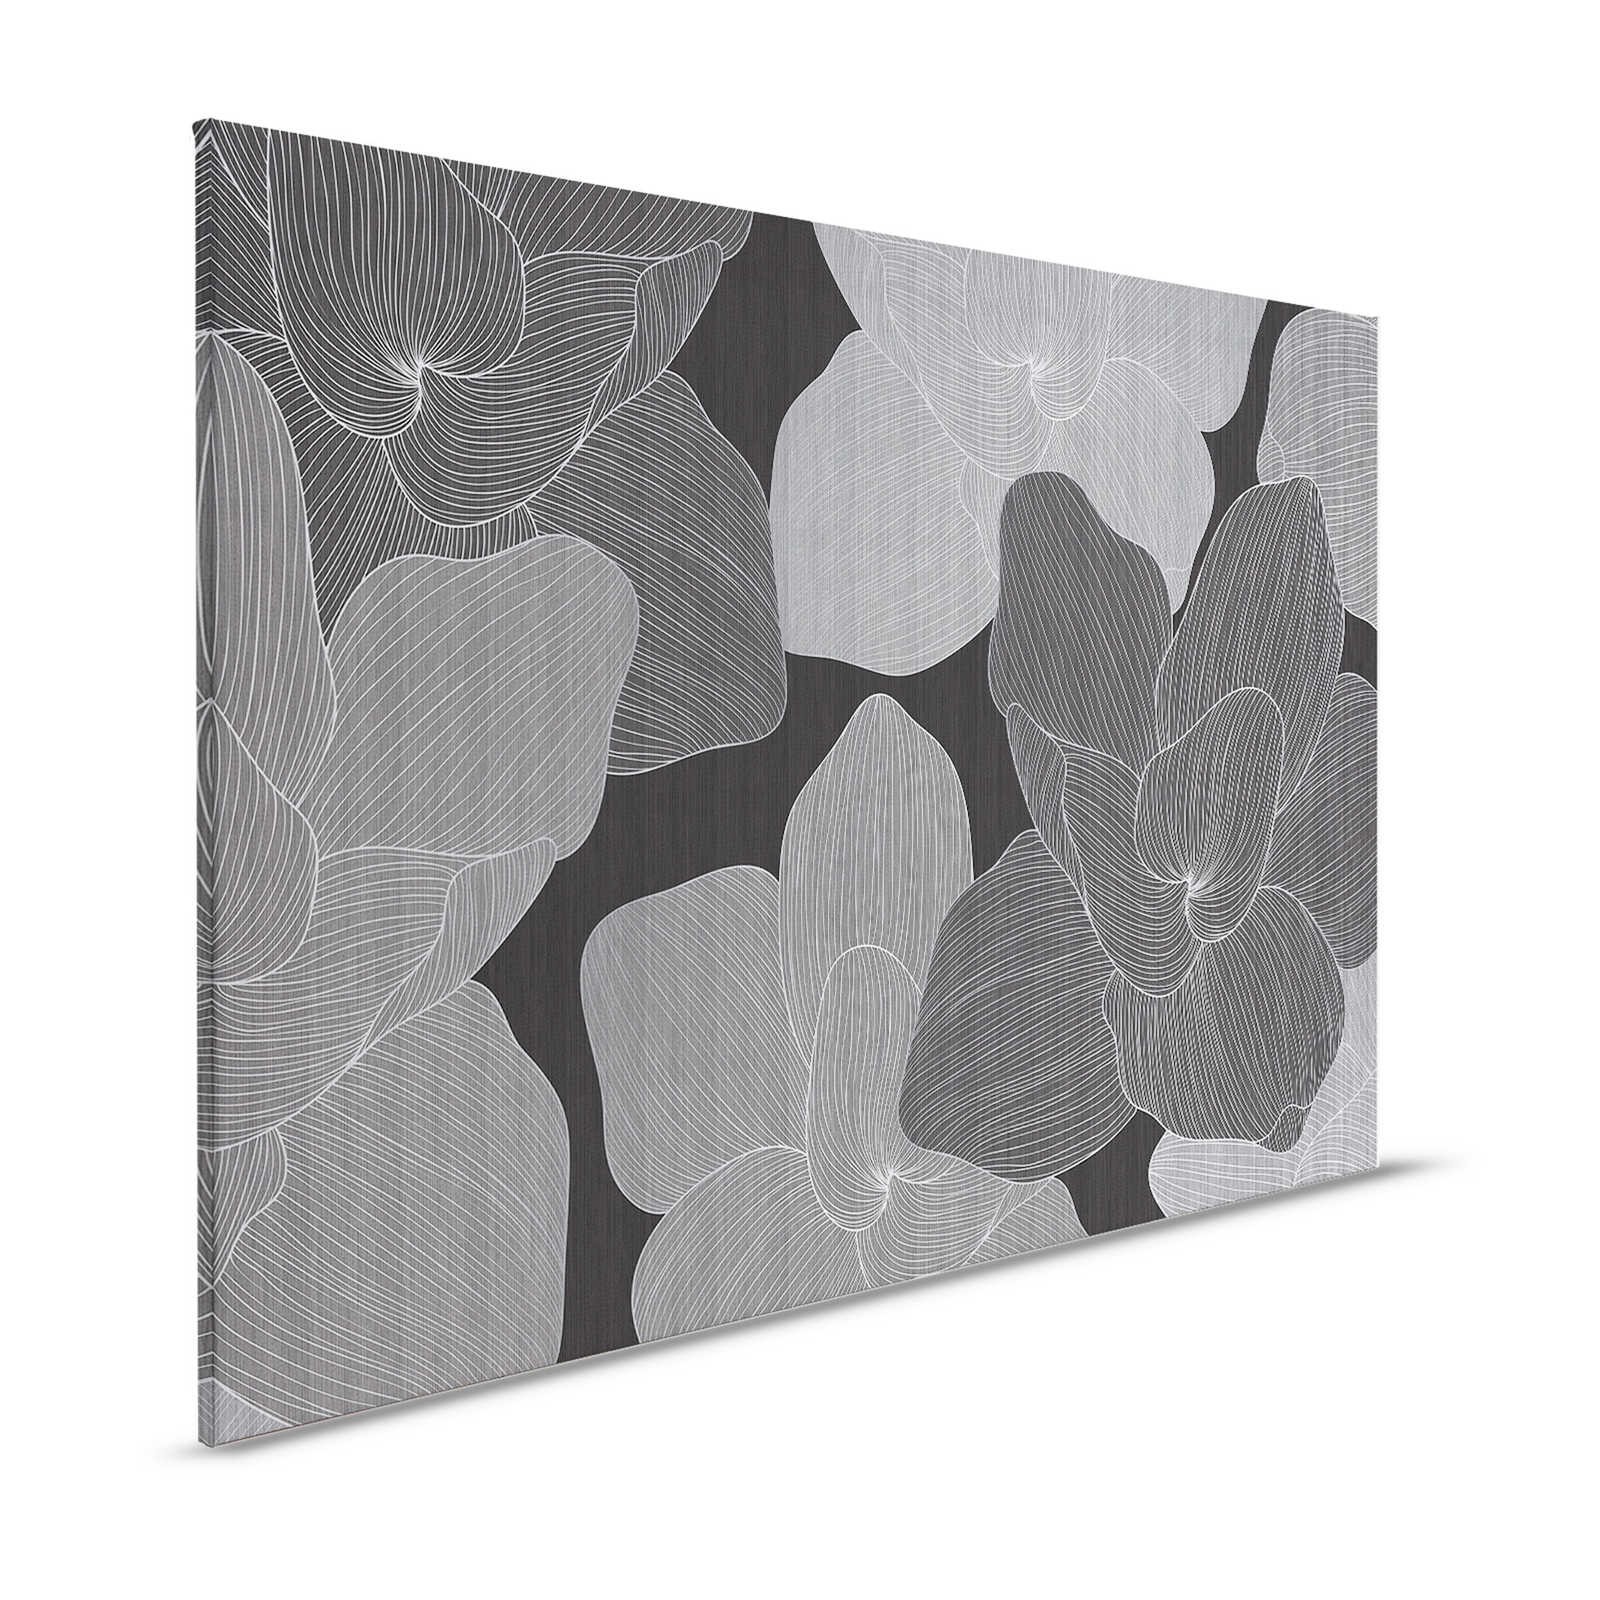 Secret Place 1 - Toile monochrome Fleurs, noir & gris - 1,20 m x 0,80 m
